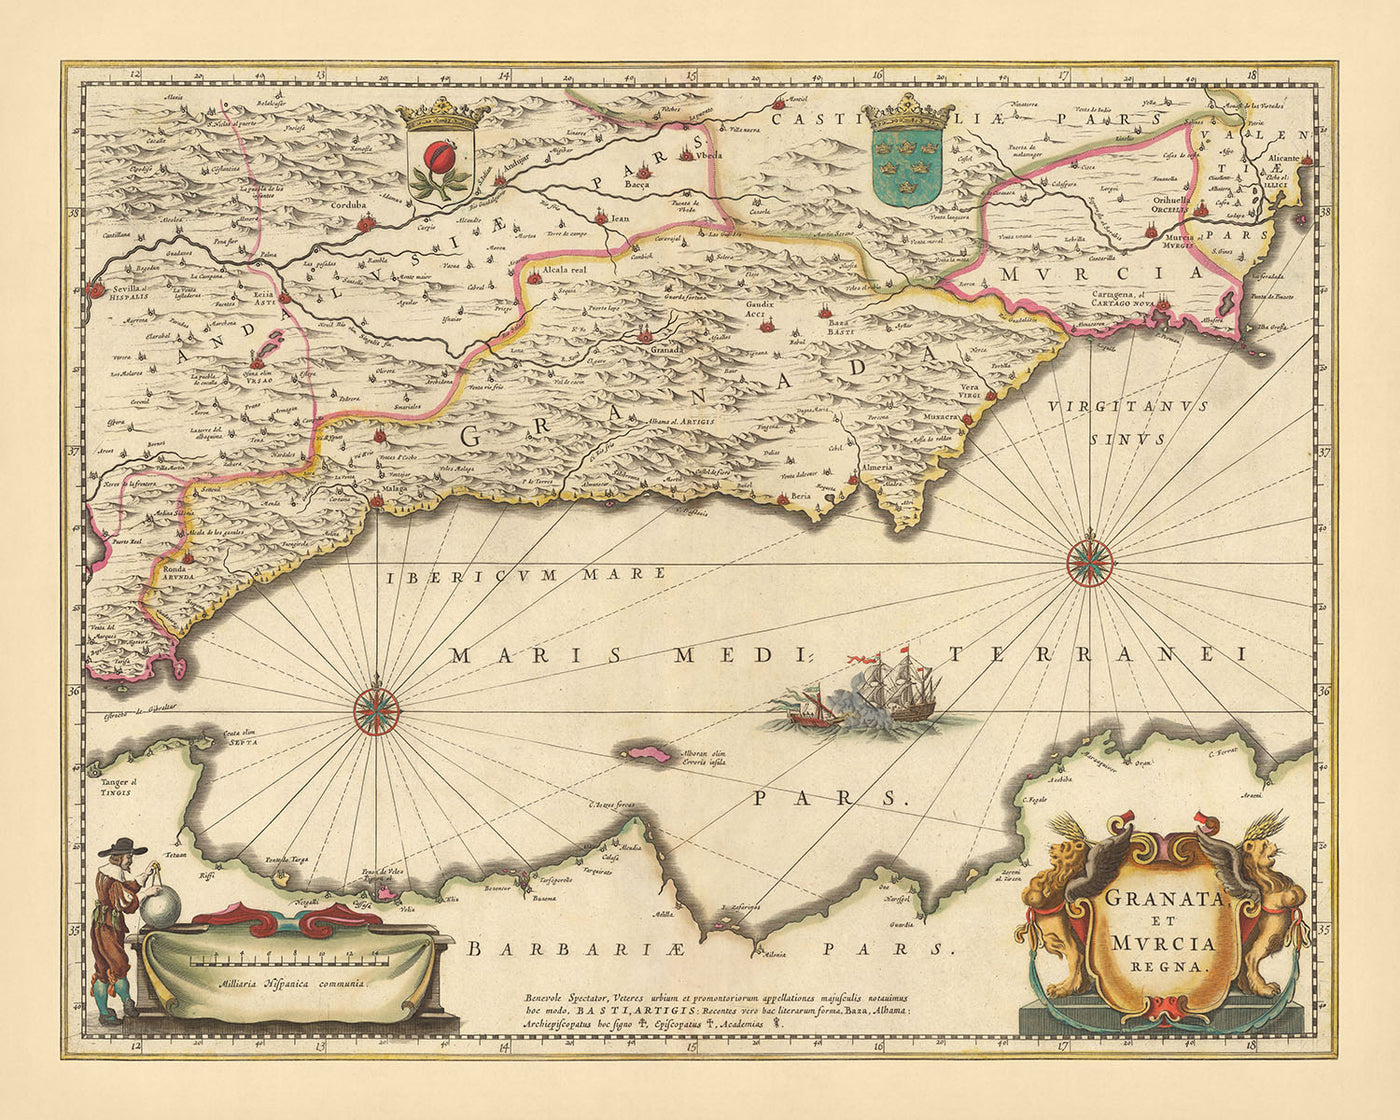 Mapa antiguo de los Reinos de Granada y Murcia, España por Visscher, 1690: Málaga, Gibraltar, Sevilla, Murcia, Tánger